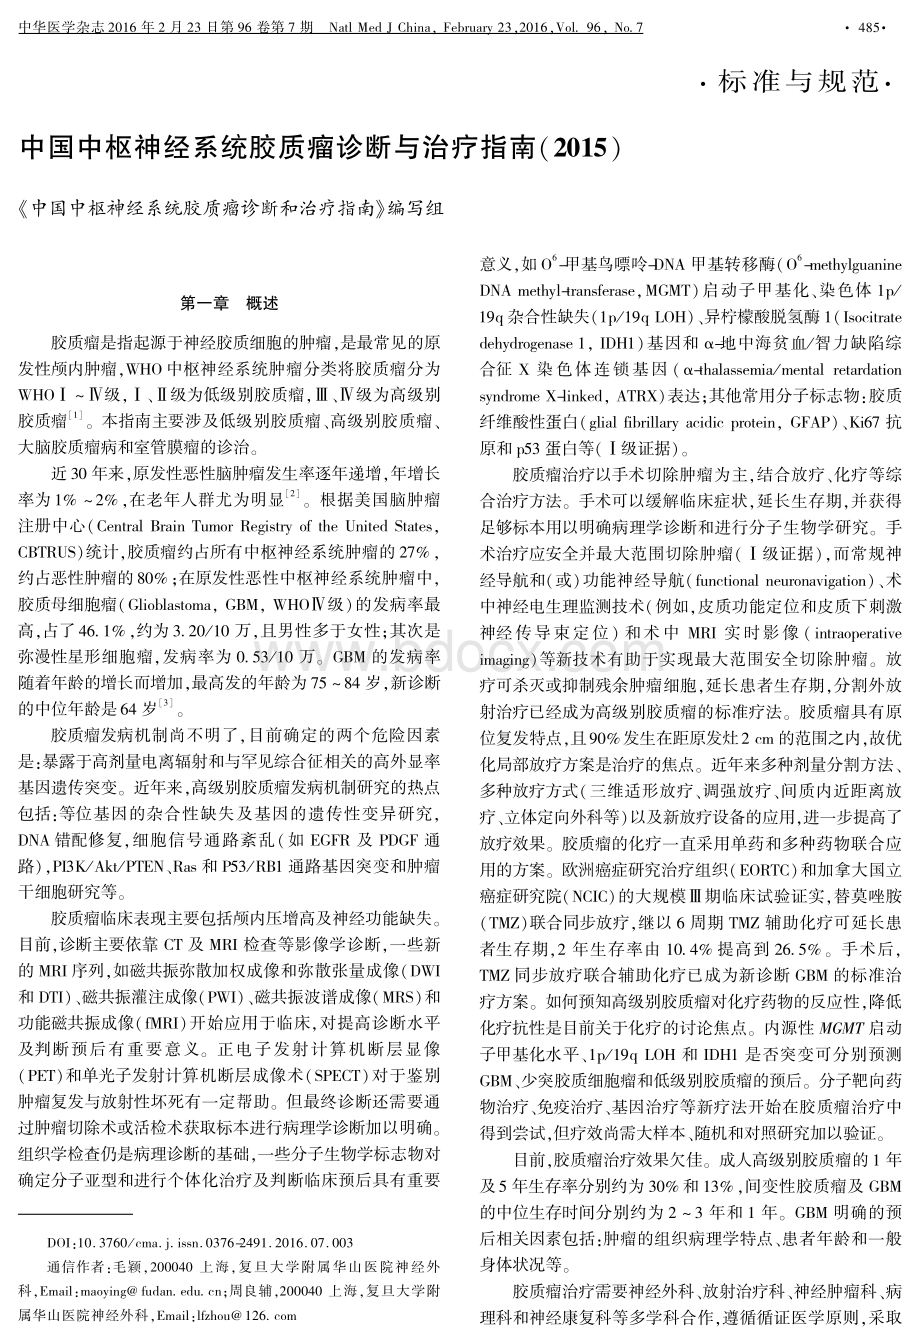 中国中枢神经系统胶质瘤诊断与治疗指南资料下载.pdf